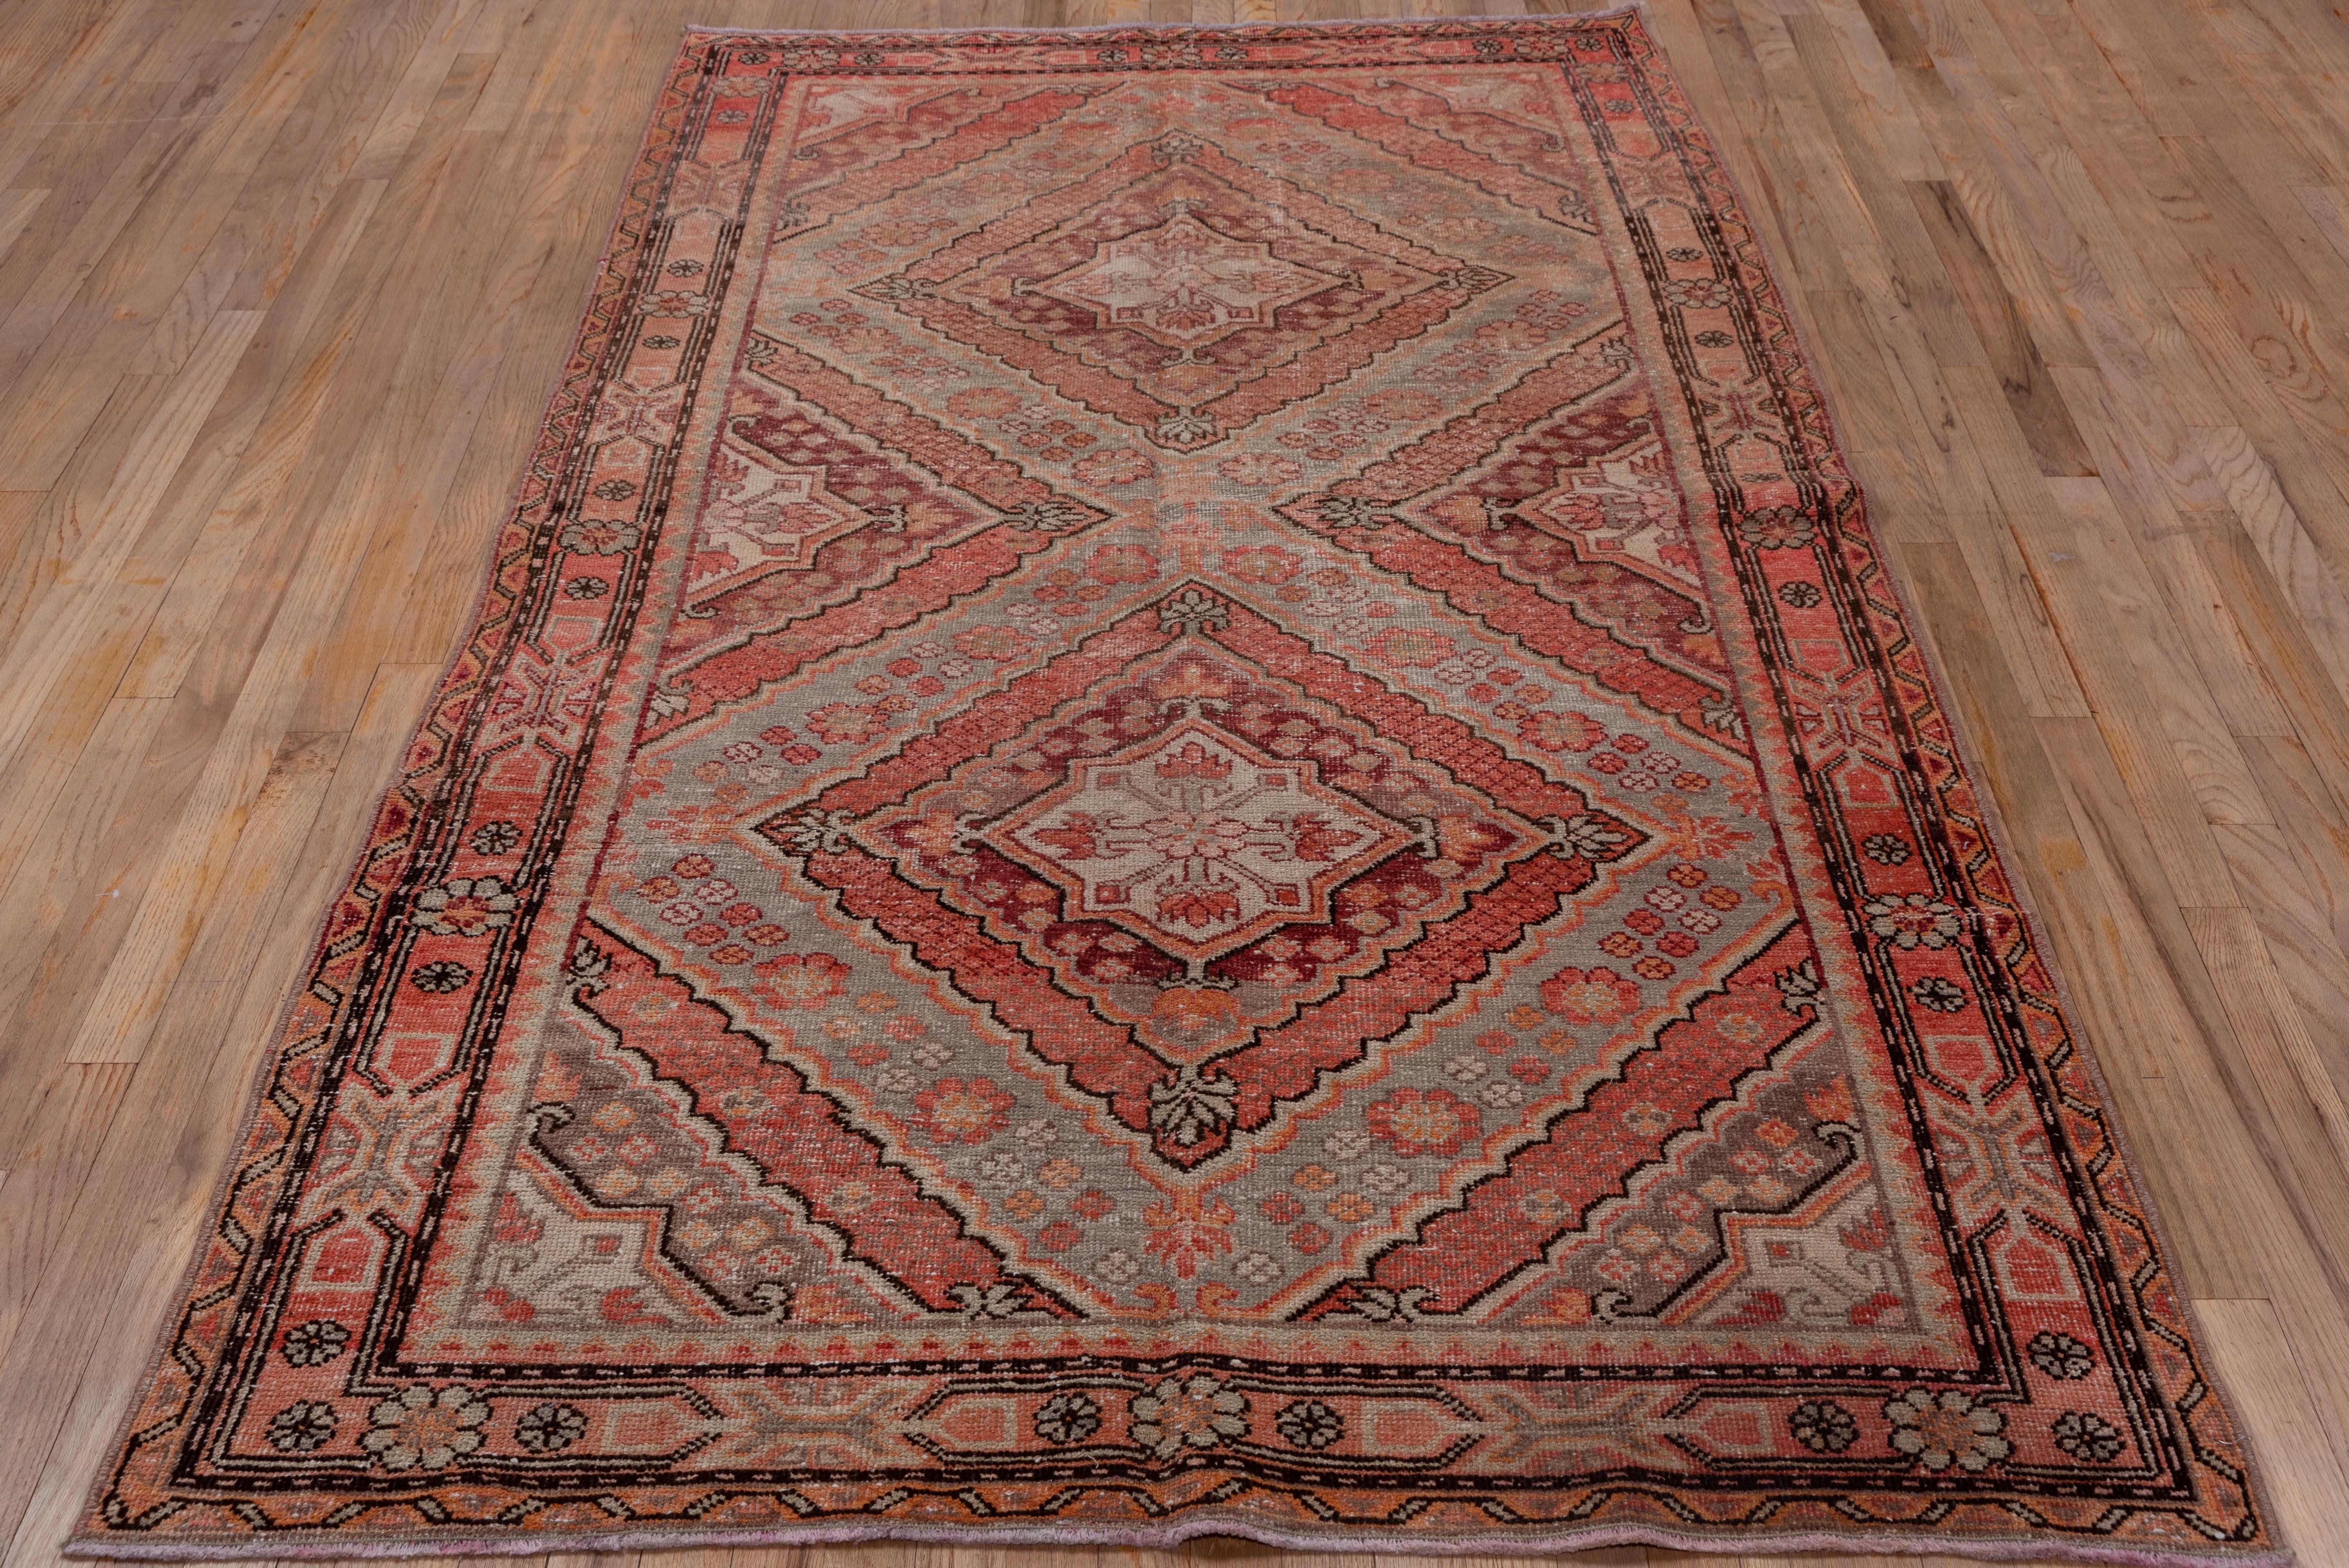 Antique Khotan Rug - Red Hues, Triangular Detailing For Sale 1